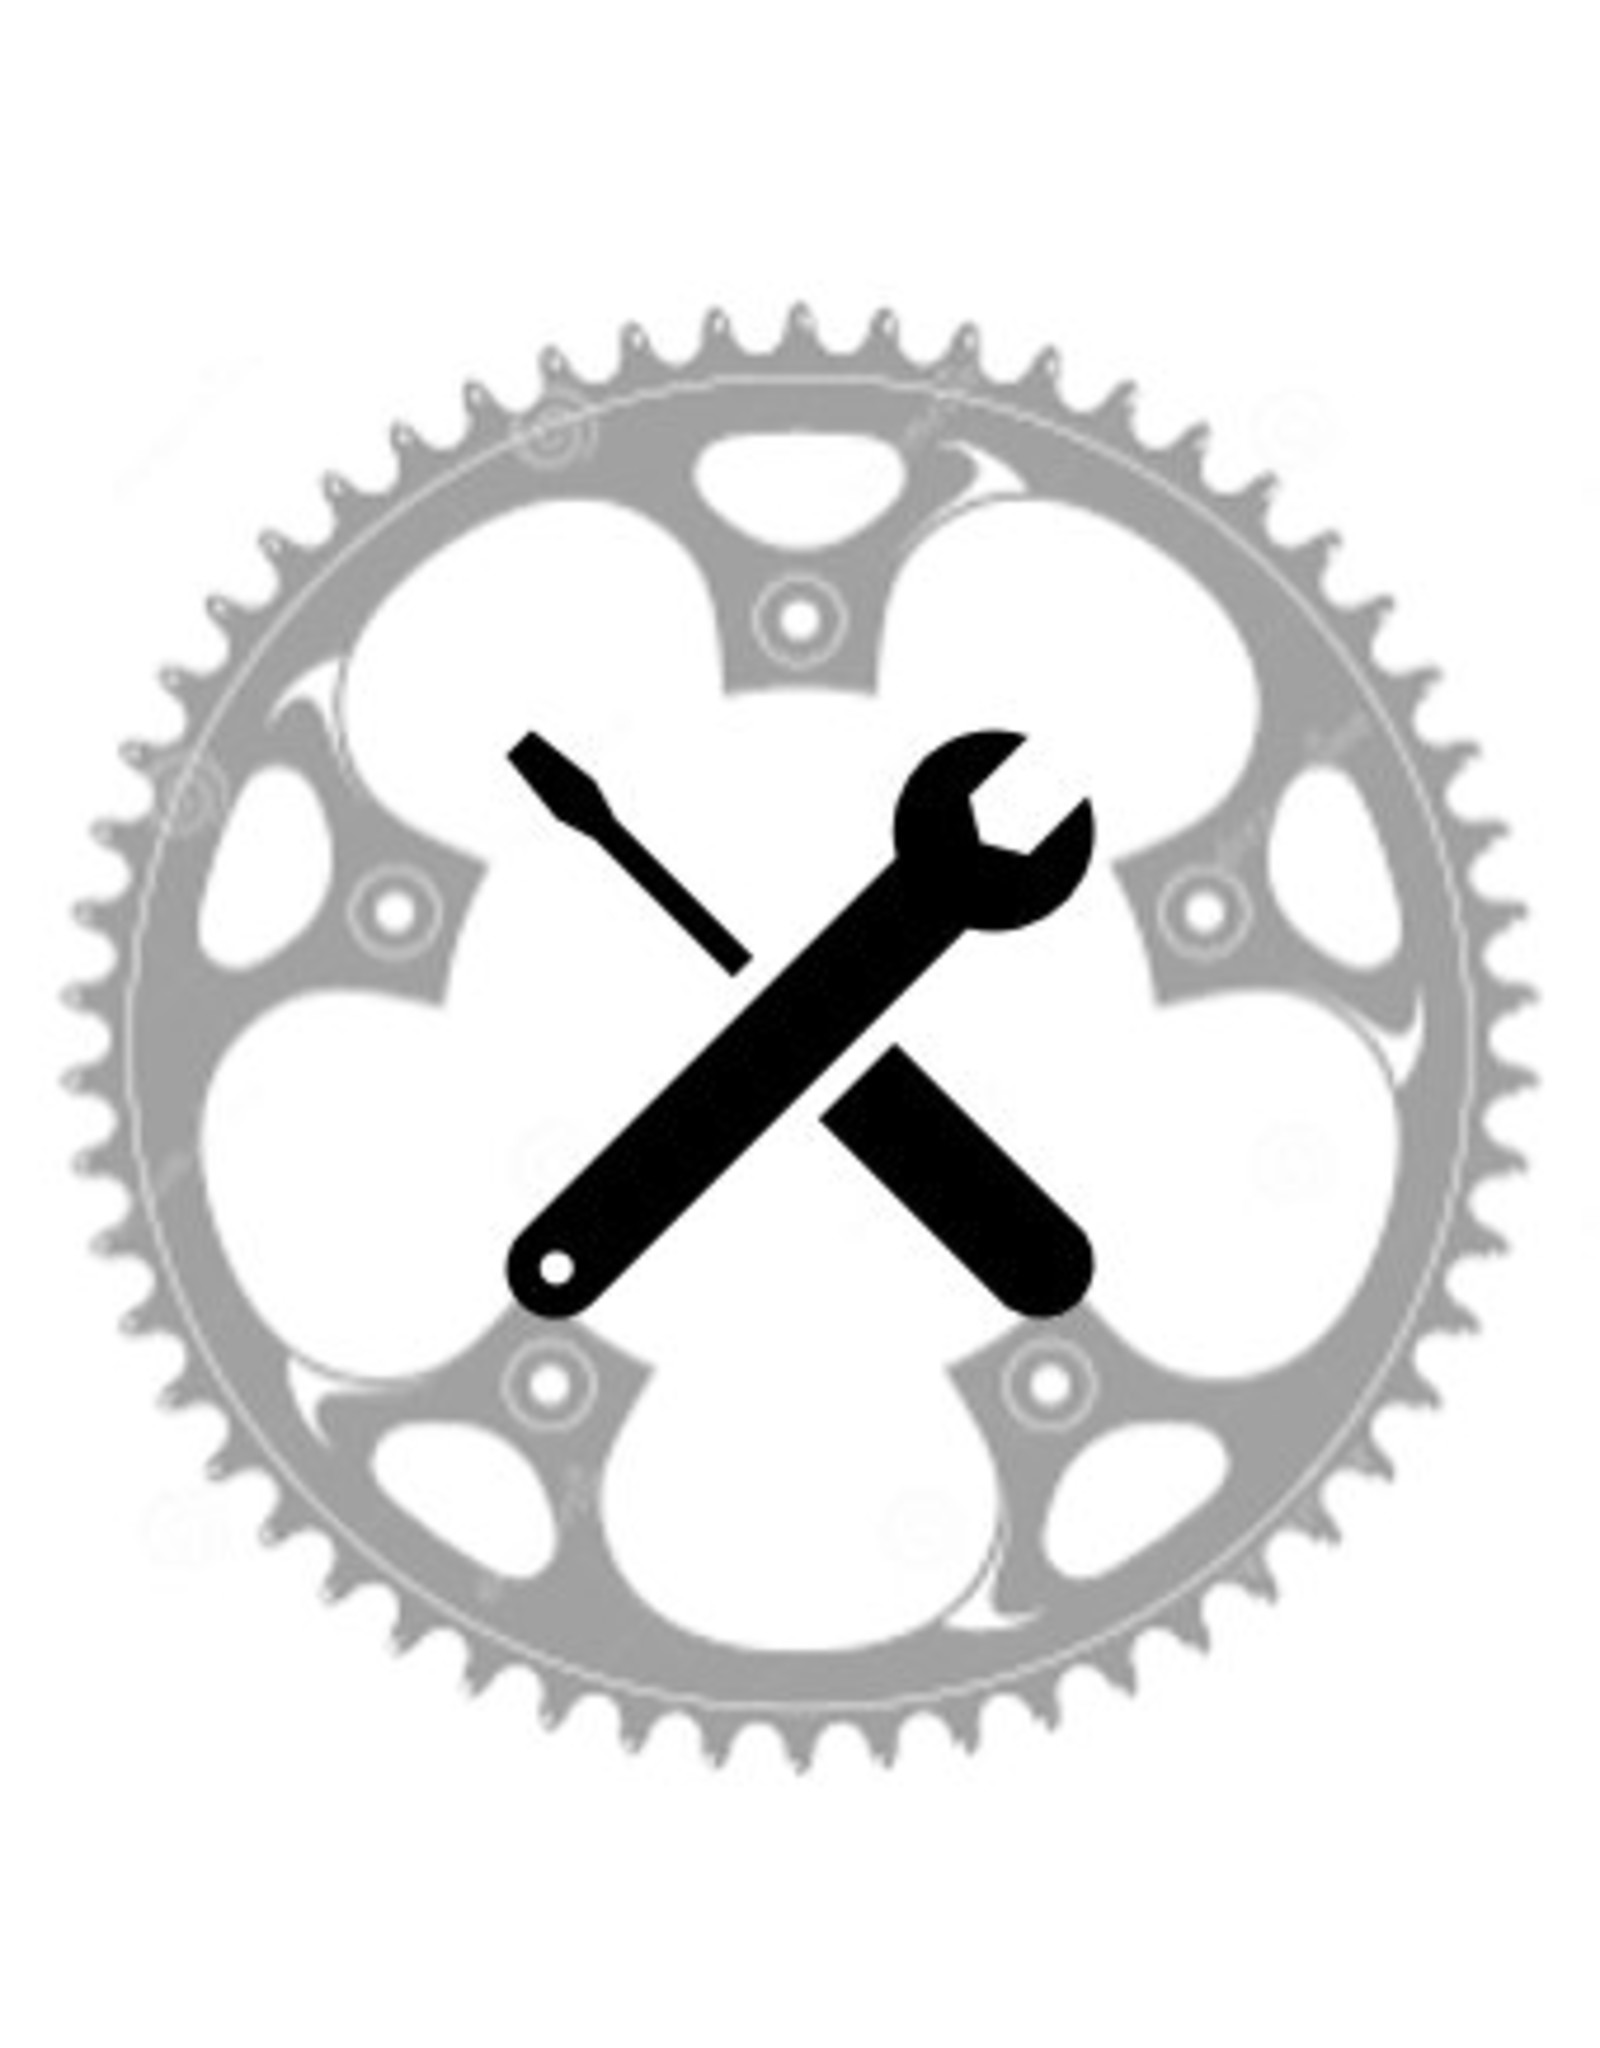 Tire/Flat Install (On Bike)